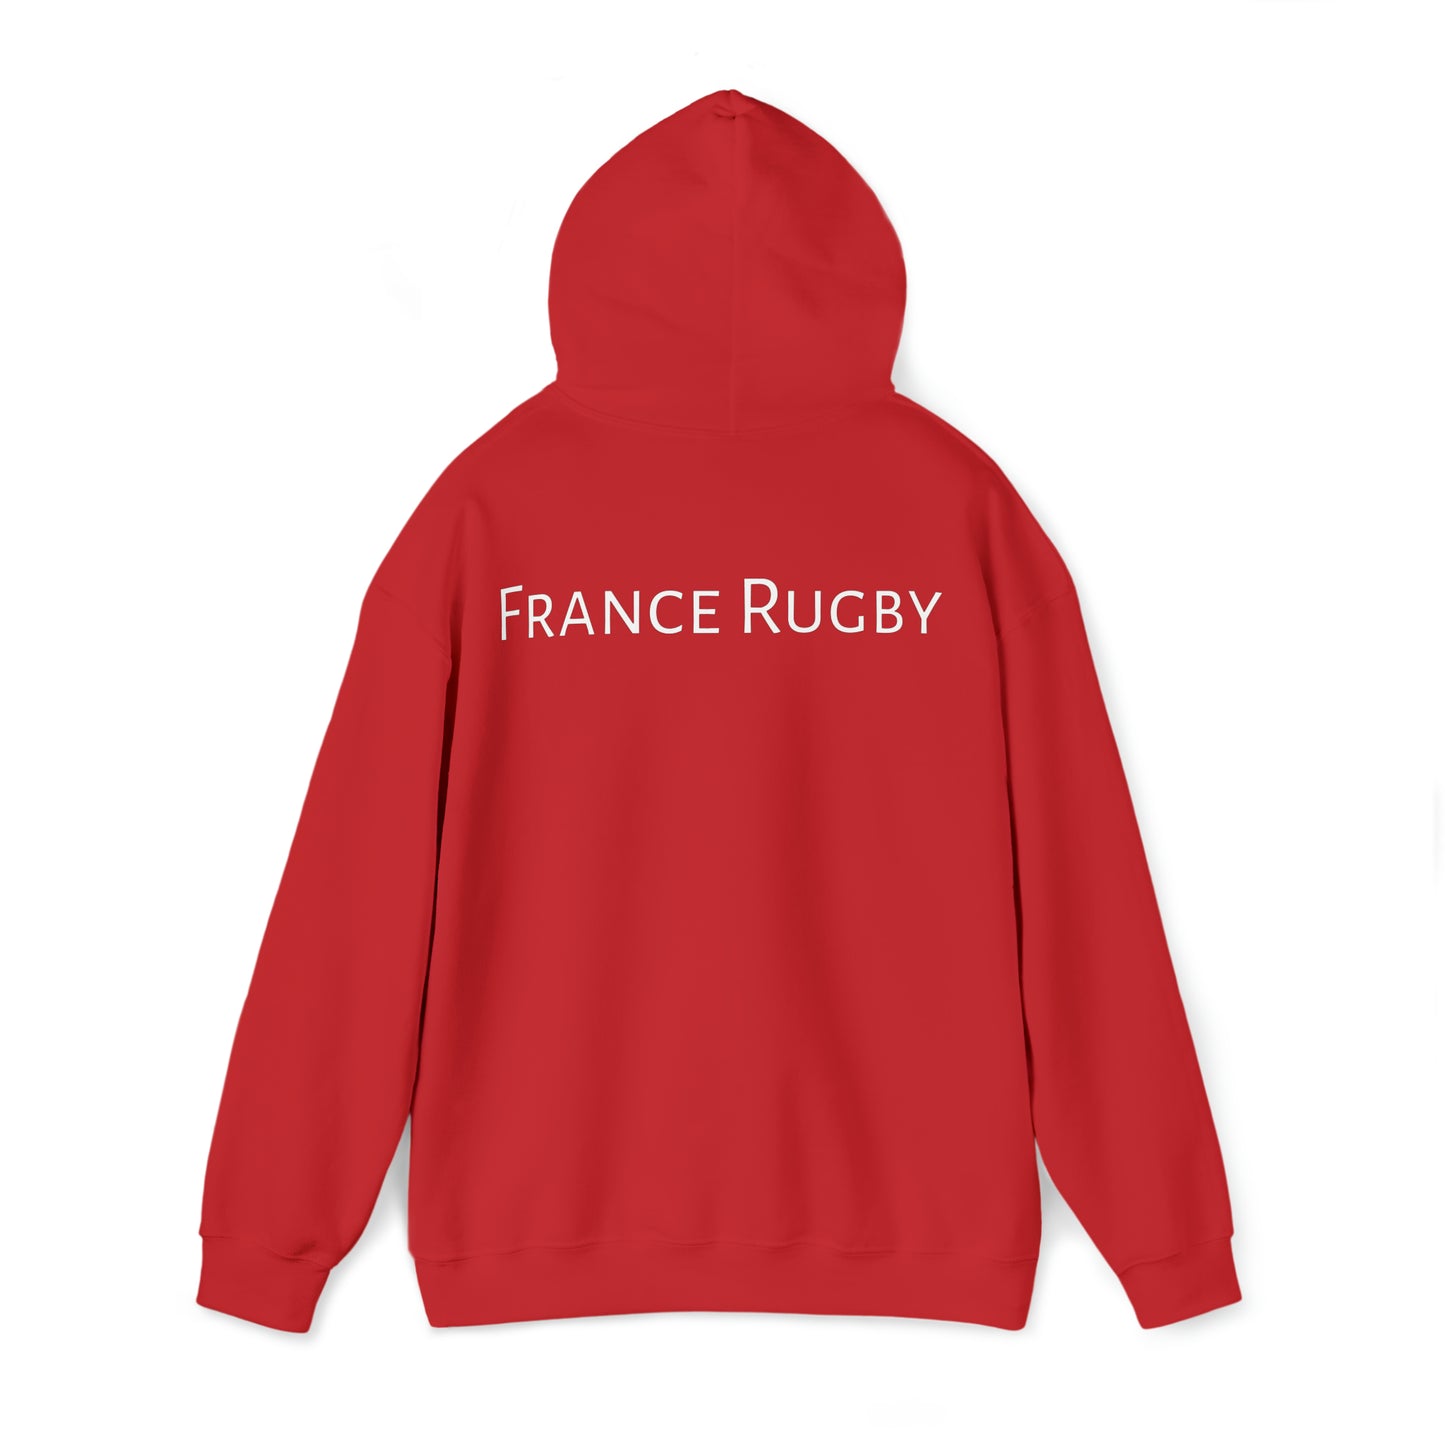 France Lifting Web Ellis Cup - dark hoodies